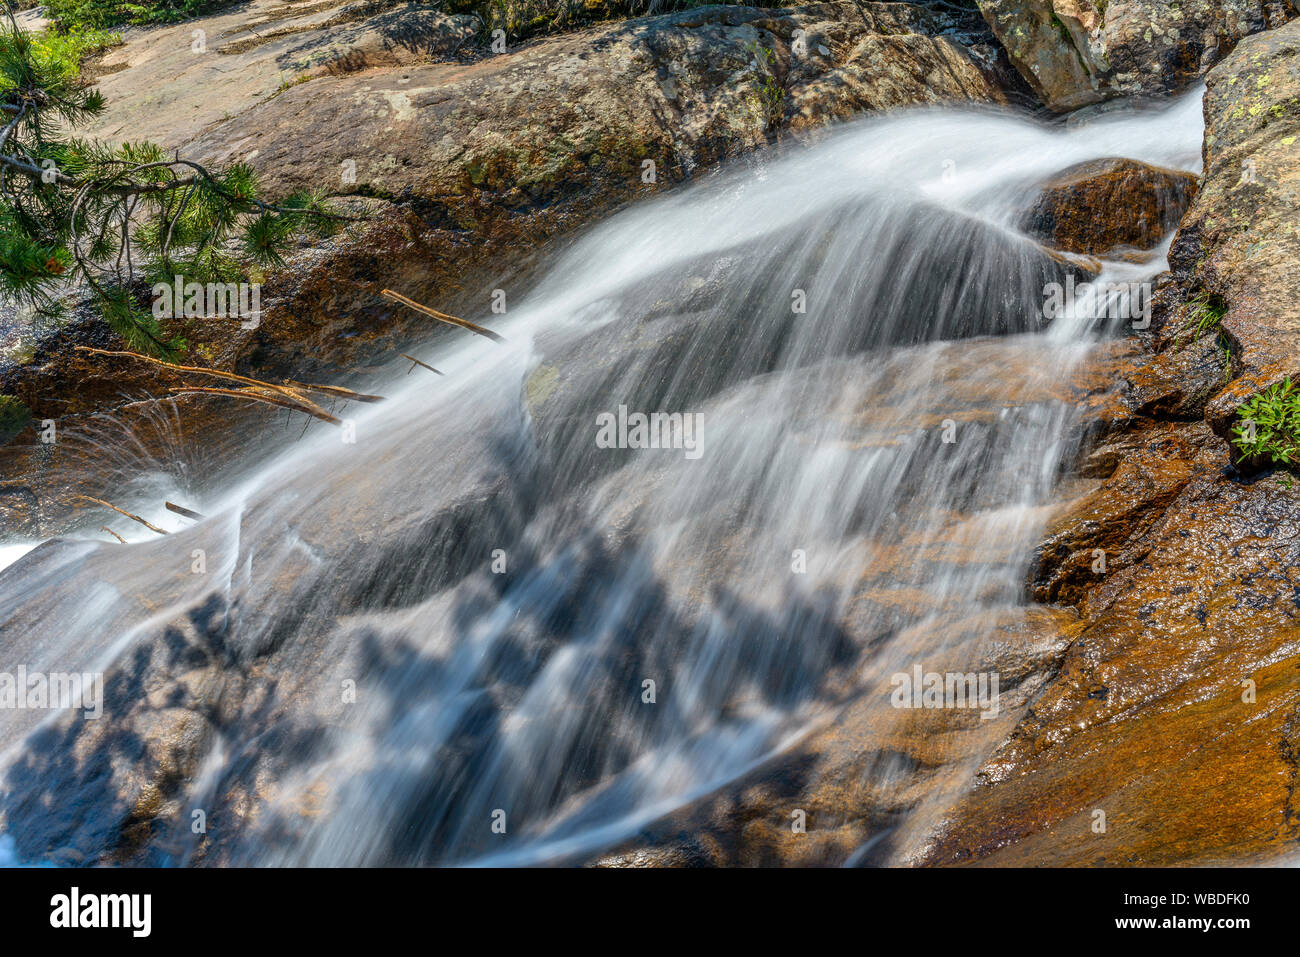 Wasser Schleier - Sommer creek Casting eine dünne Schicht Wasser Schleier über Fels Oberfläche. Fall River, Rocky Mountain National Park, CO, USA. Stockfoto